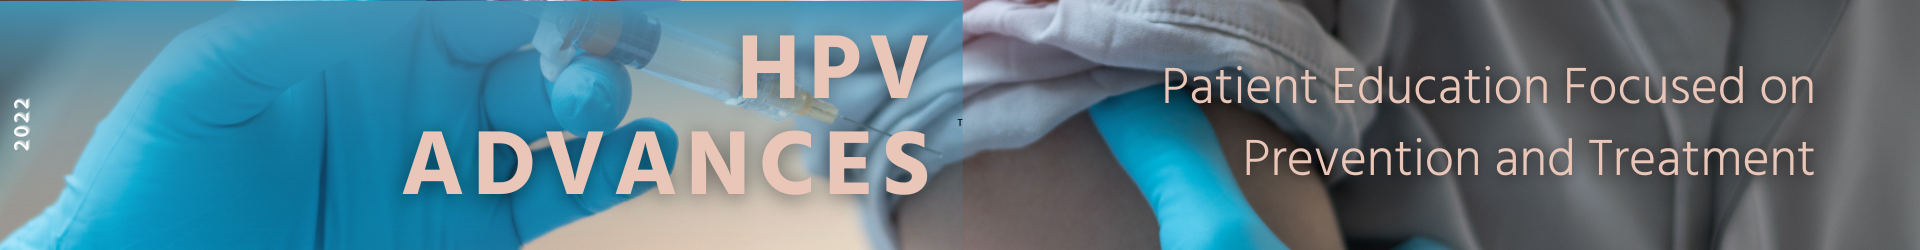 HPV Advances 